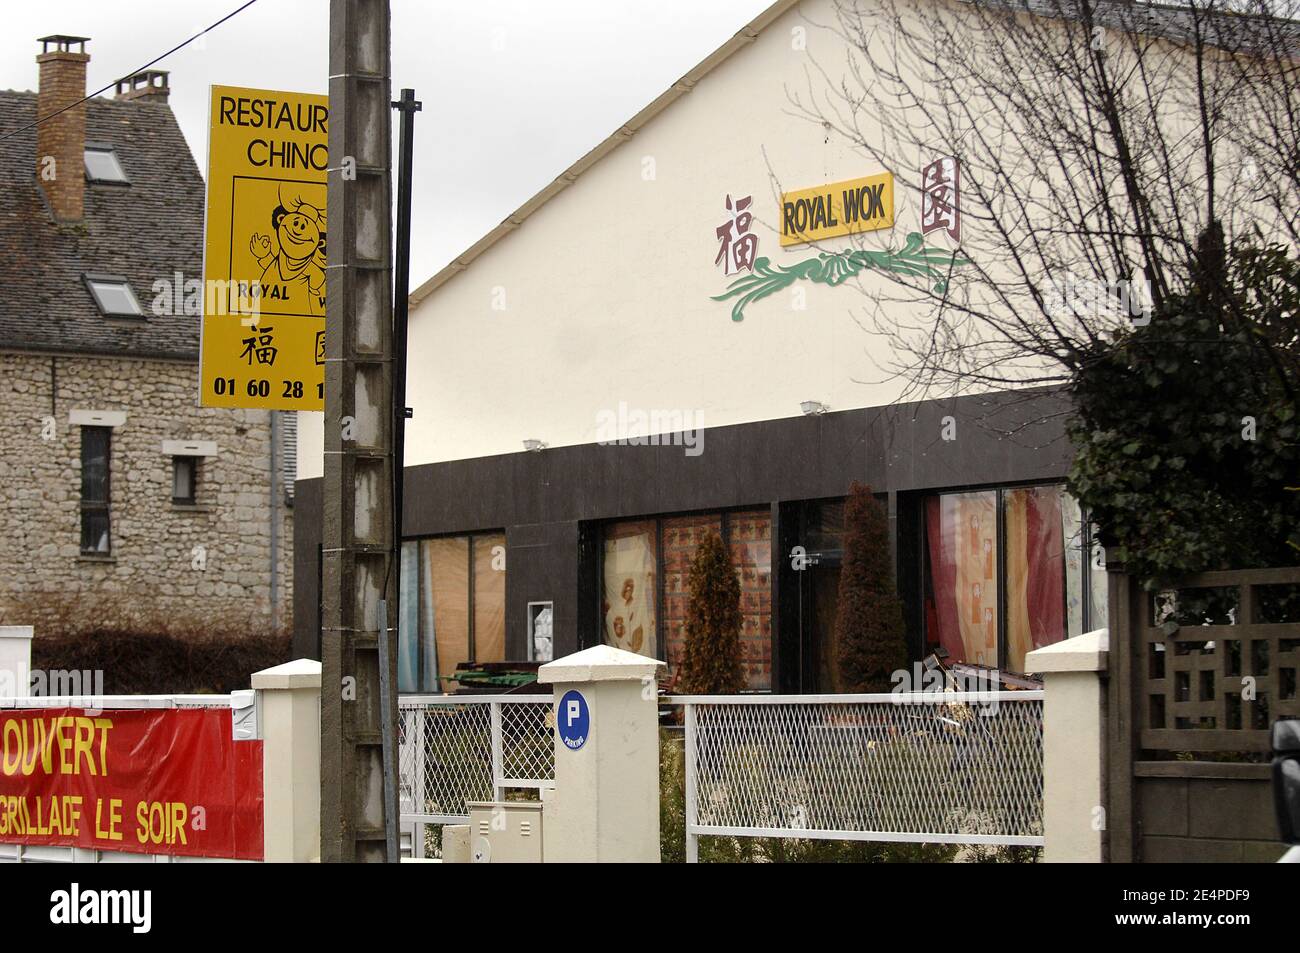 La police française enquête à l'intérieur d'un restaurant chinois à Brie- Comte-Robert, au sud de Paris, le 1er février 2008, après que les  travailleurs ont déclaré avoir trouvé des restes humains l'été dernier